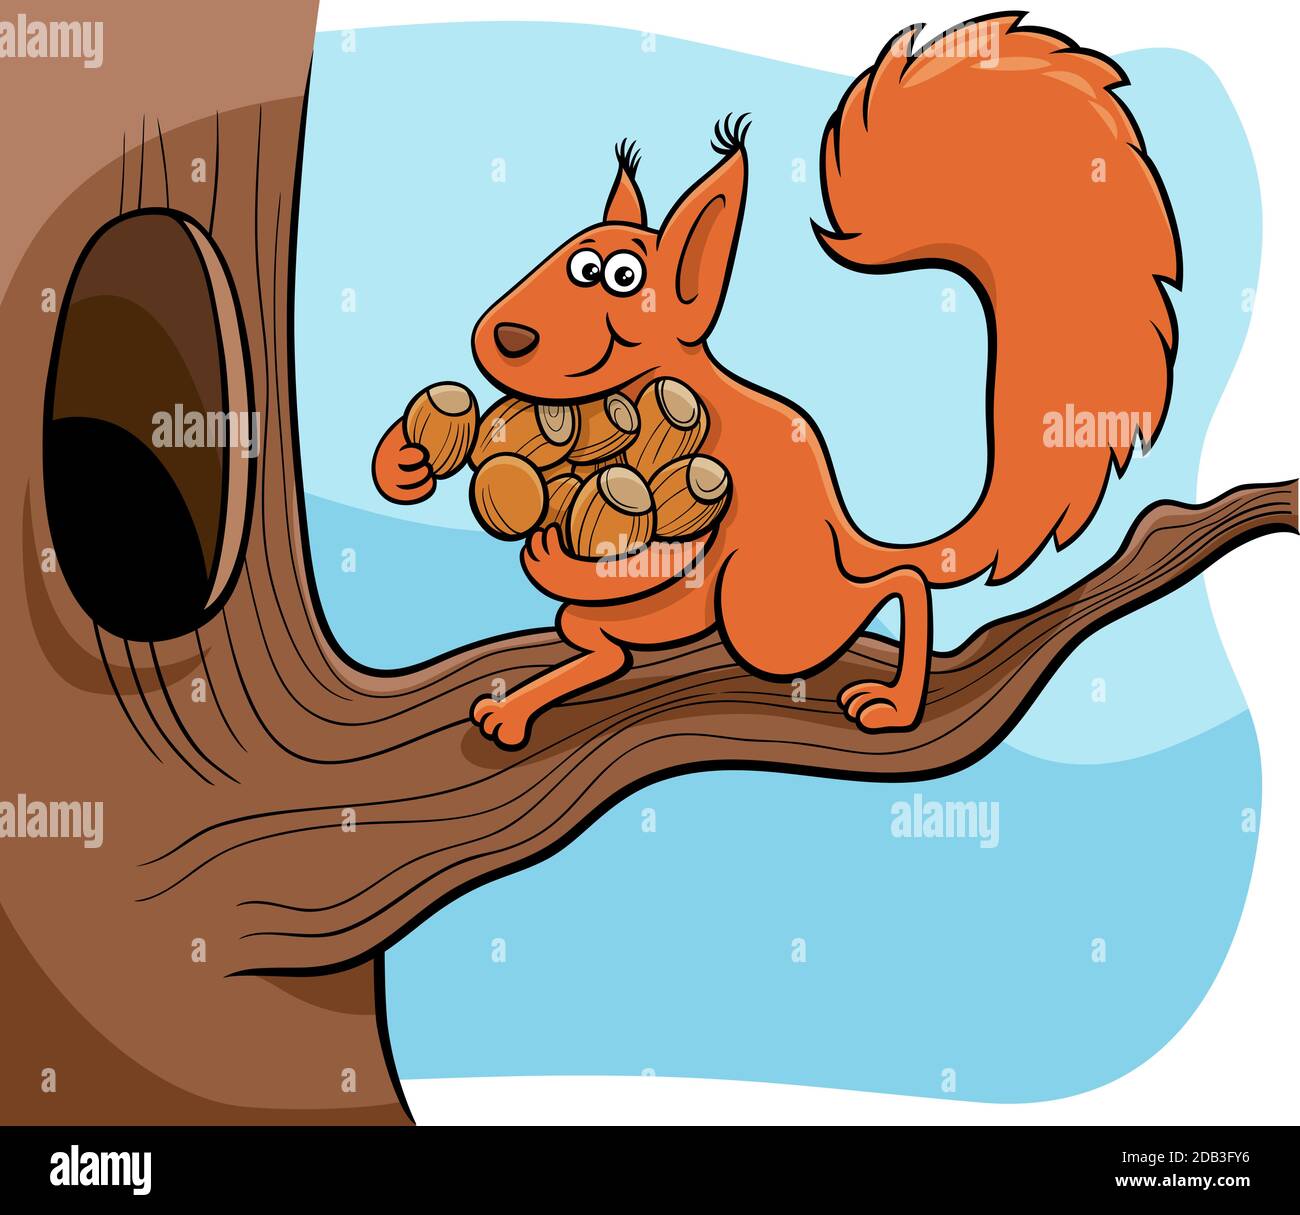 Ilustración de dibujos animados de gracioso personaje de ardilla animal llevando bellotas el hueco en el árbol Ilustración del Vector